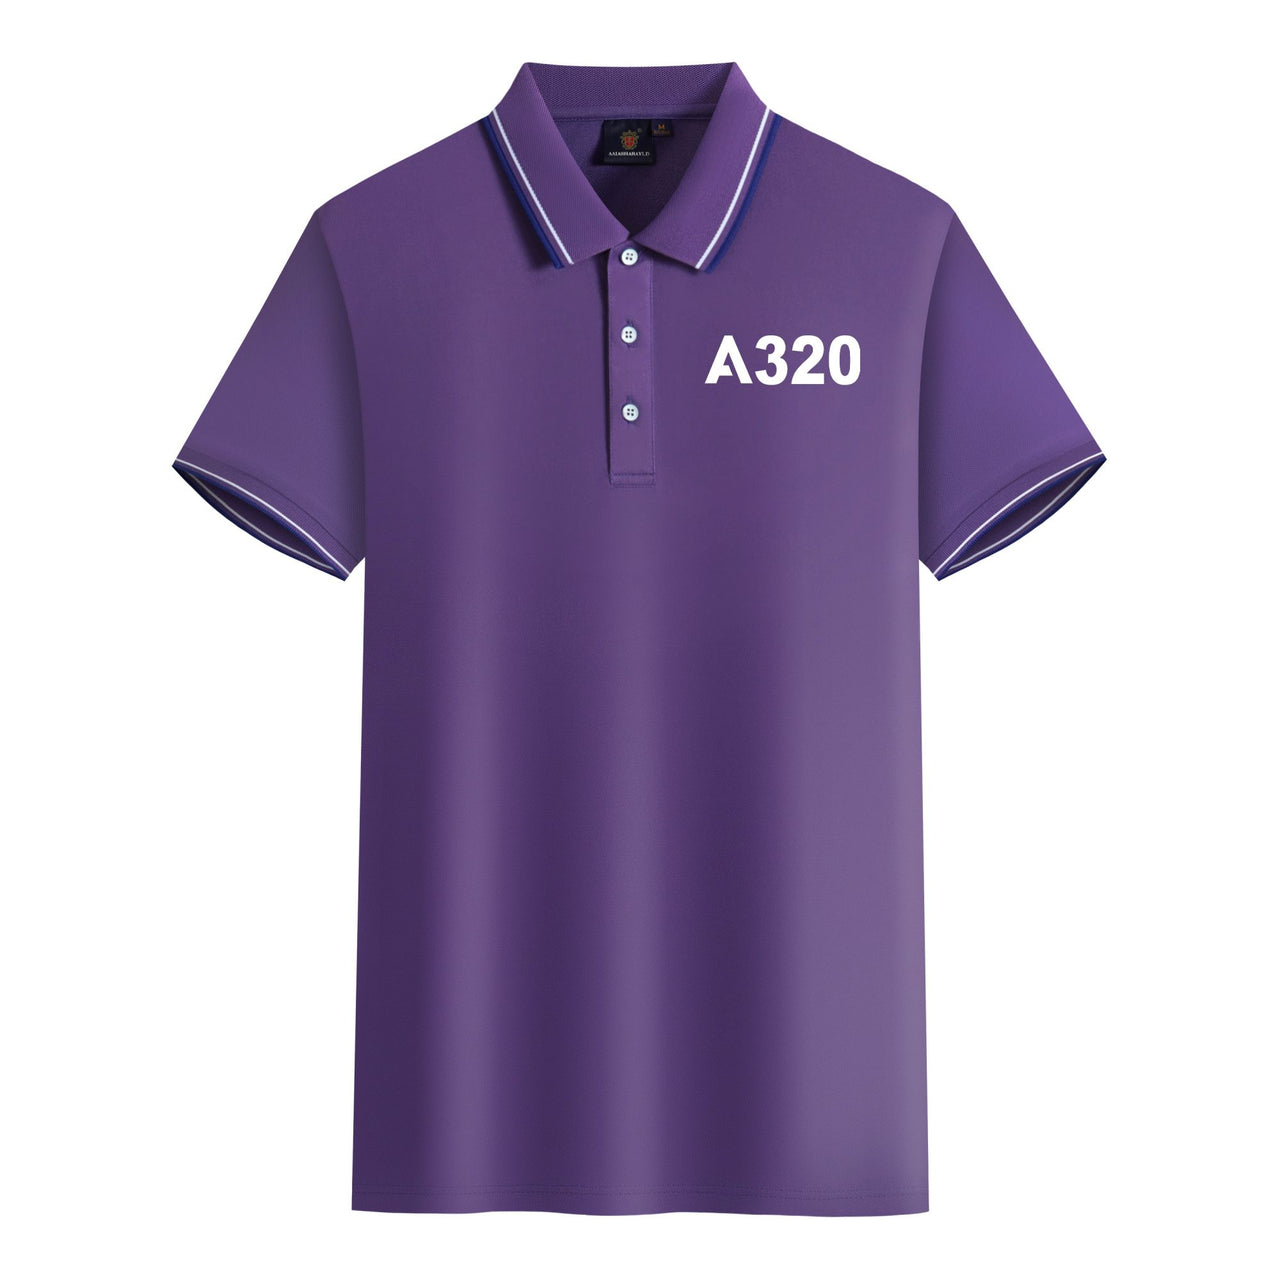 A320 Flat Text Designed Stylish Polo T-Shirts